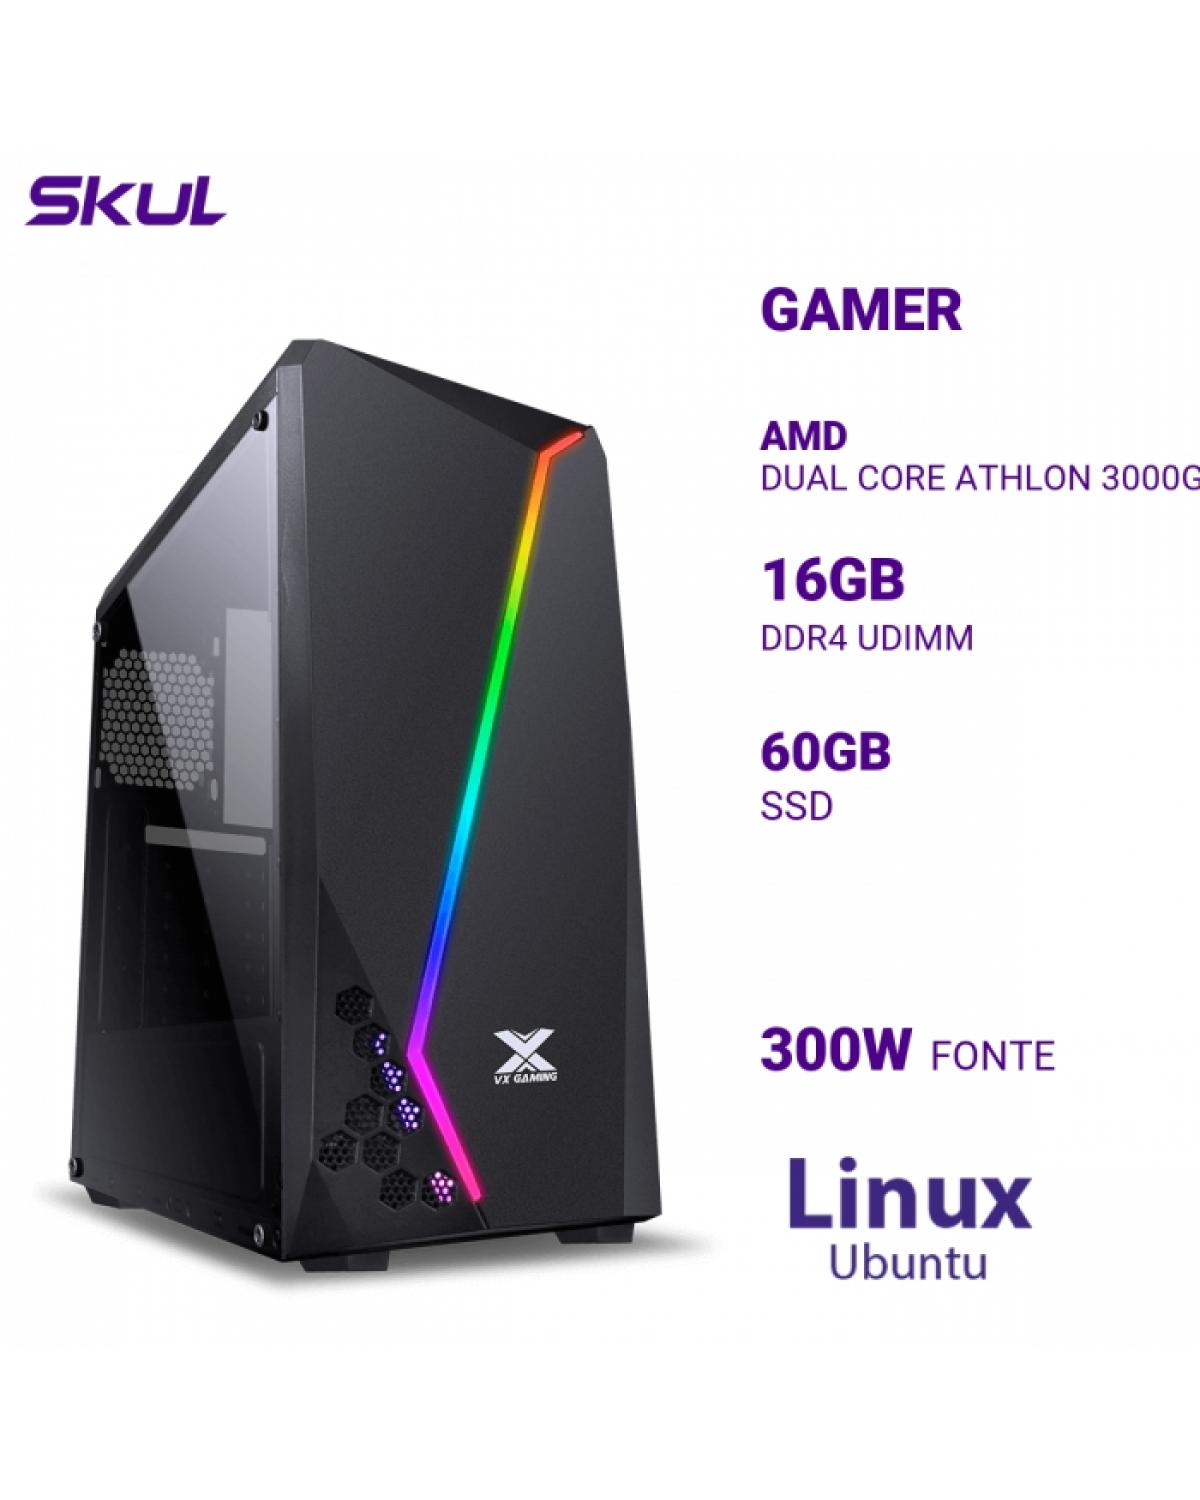 COMPUTADOR GAMER 1000 DUAL CORE ATHLON 3000G 3.50GHZ MEM 16GB DDR4 SSD 60GB FONTE 300W LINUX